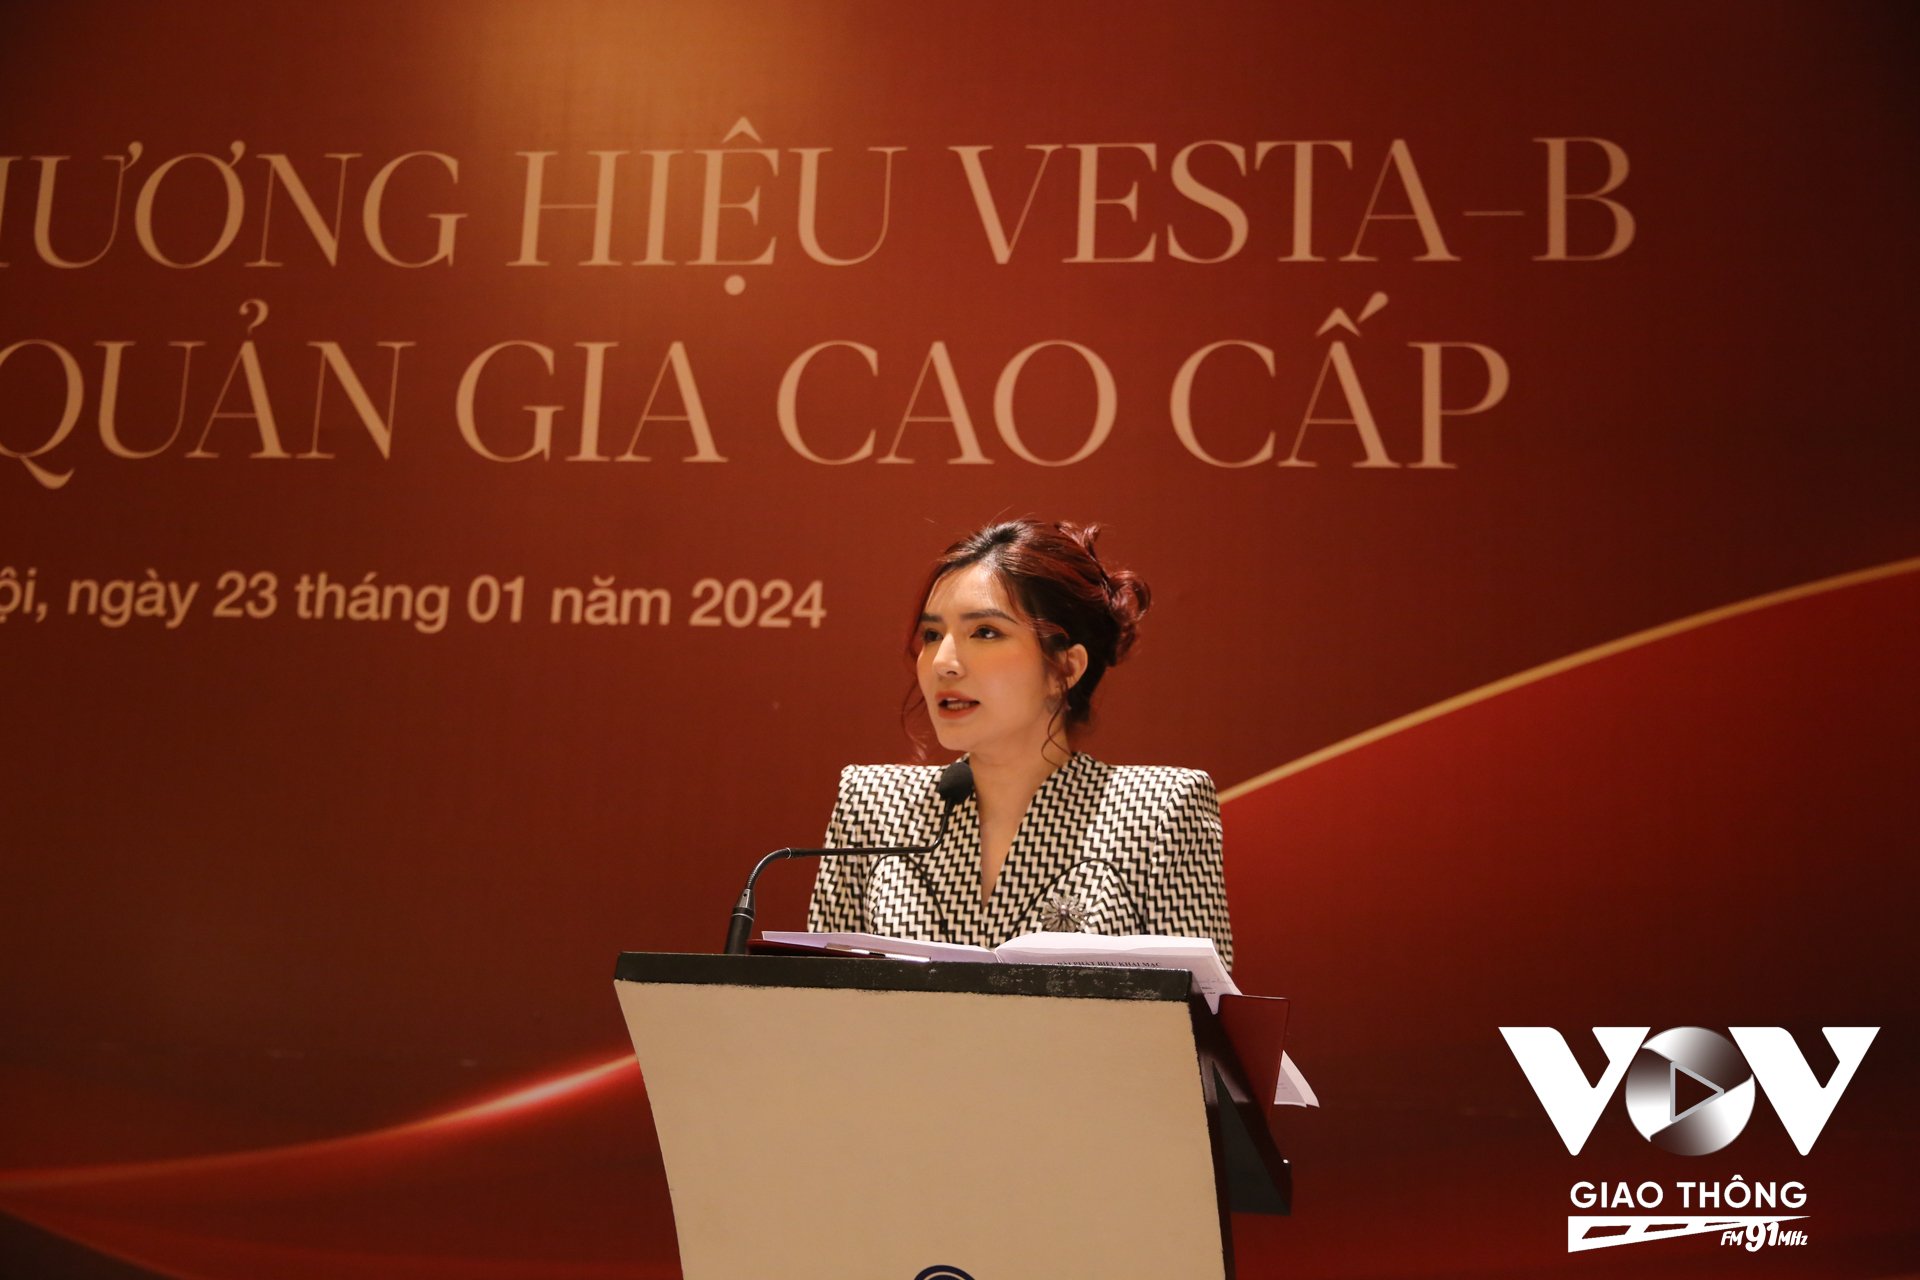 Quản gia cao cấp: Ngành nghề mới đầy tiềm năng tại Việt Nam